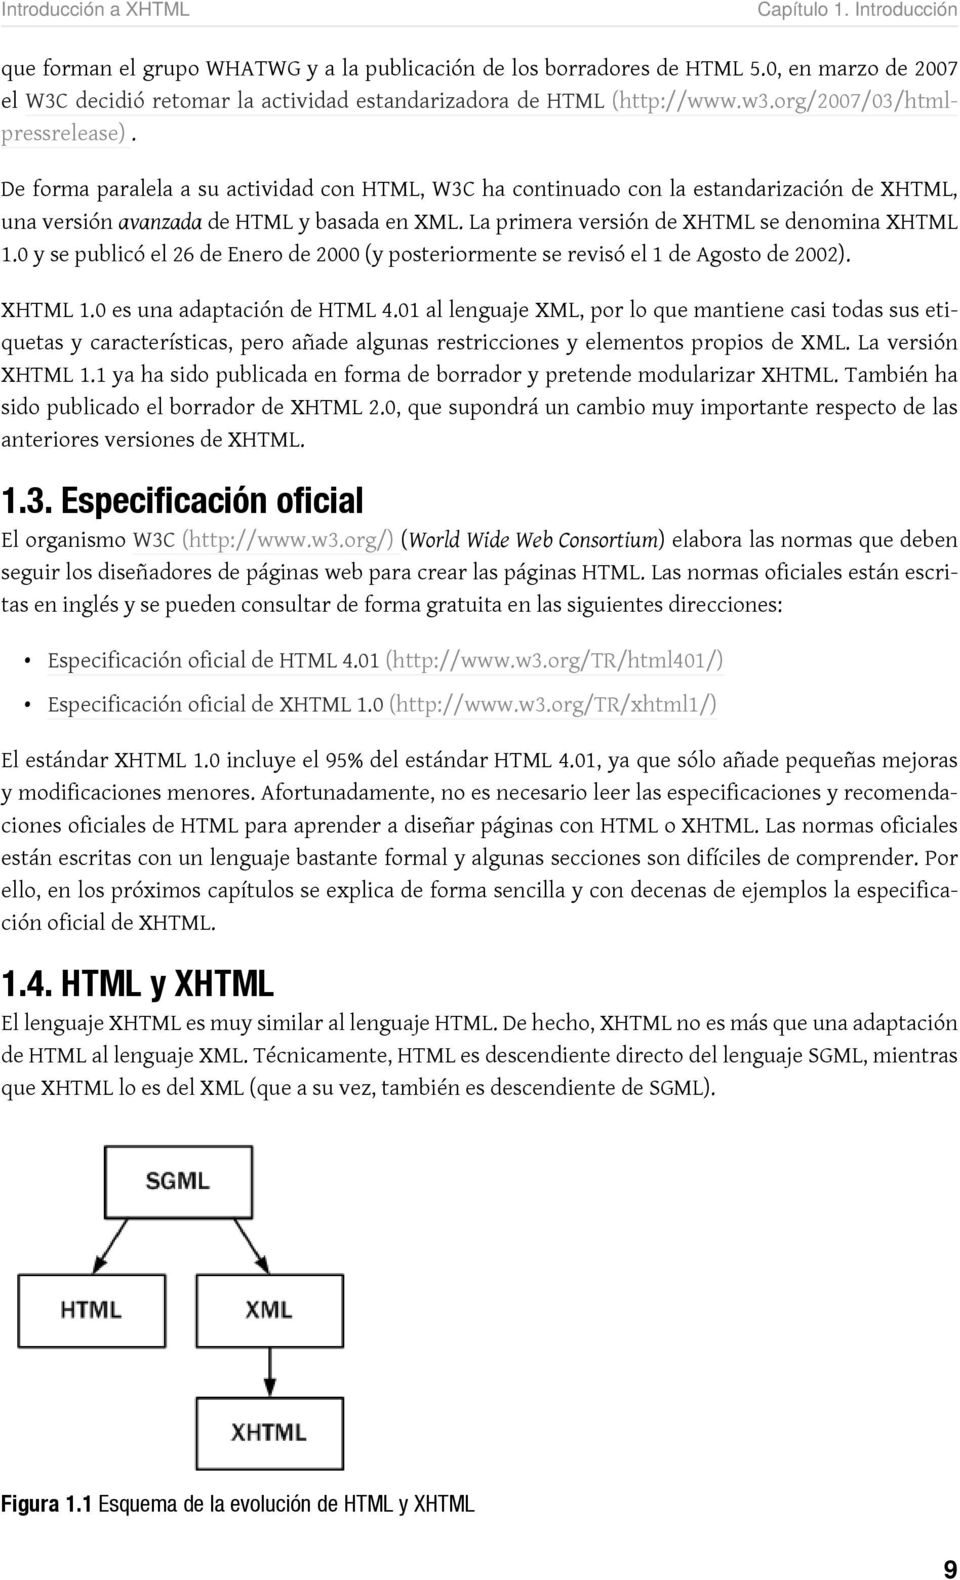 De forma paralela a su actividad con HTML, W3C ha continuado con la estandarización de XHTML, una versión avanzada de HTML y basada en XML. La primera versión de XHTML se denomina XHTML 1.